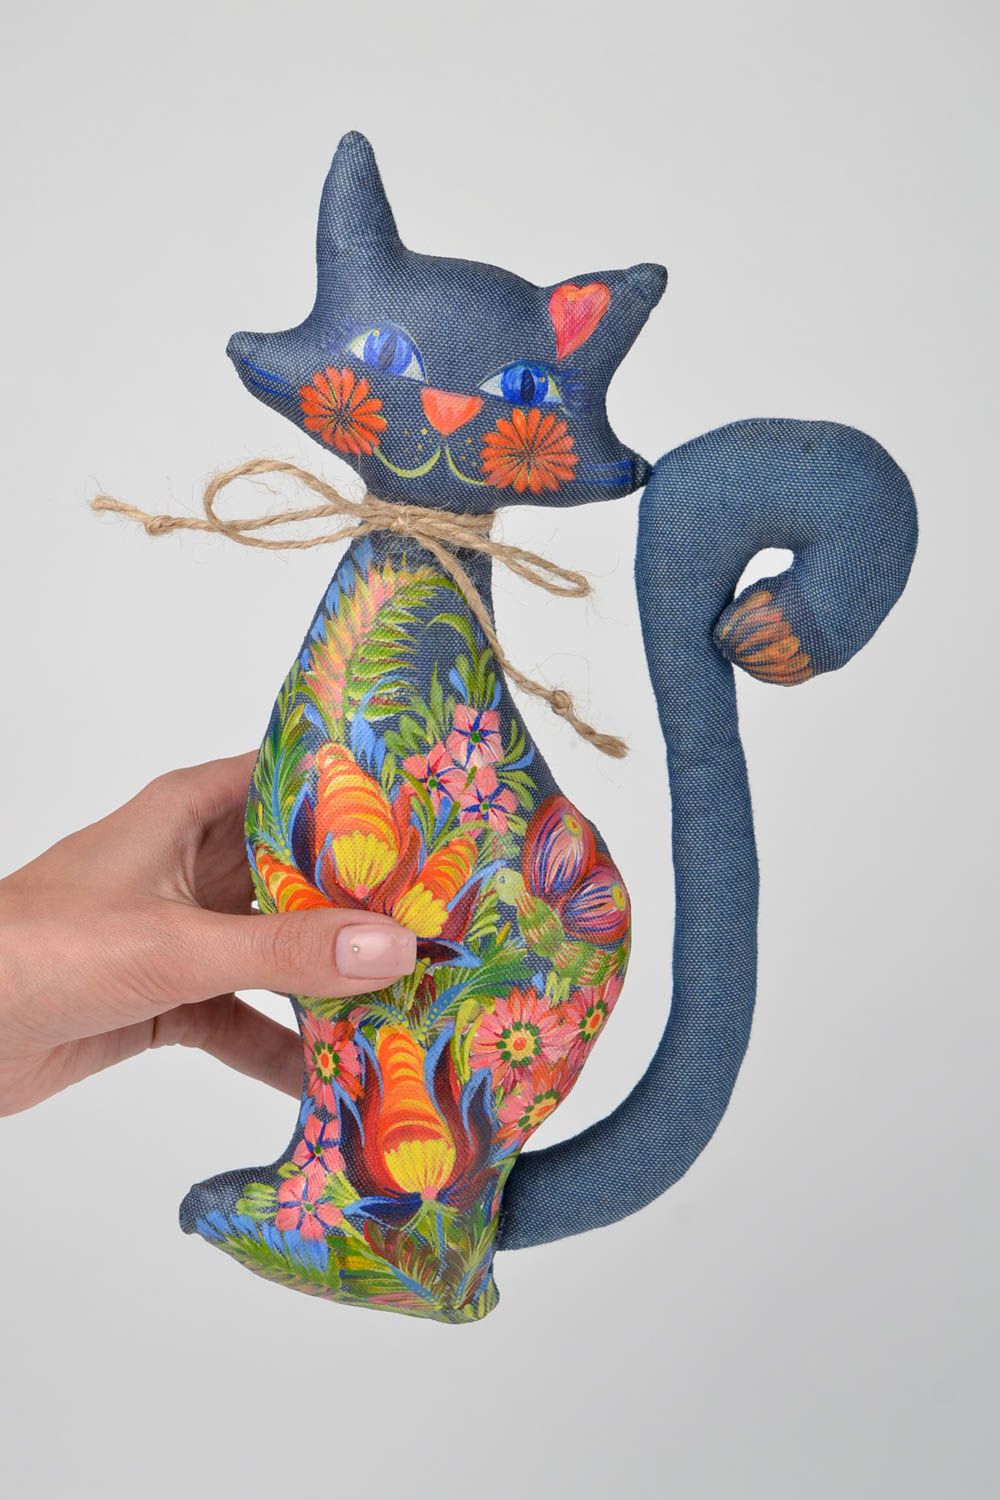 Игрушка кошка игрушка ручной работы интересный подарок Кошка из джинса расписная фото 2